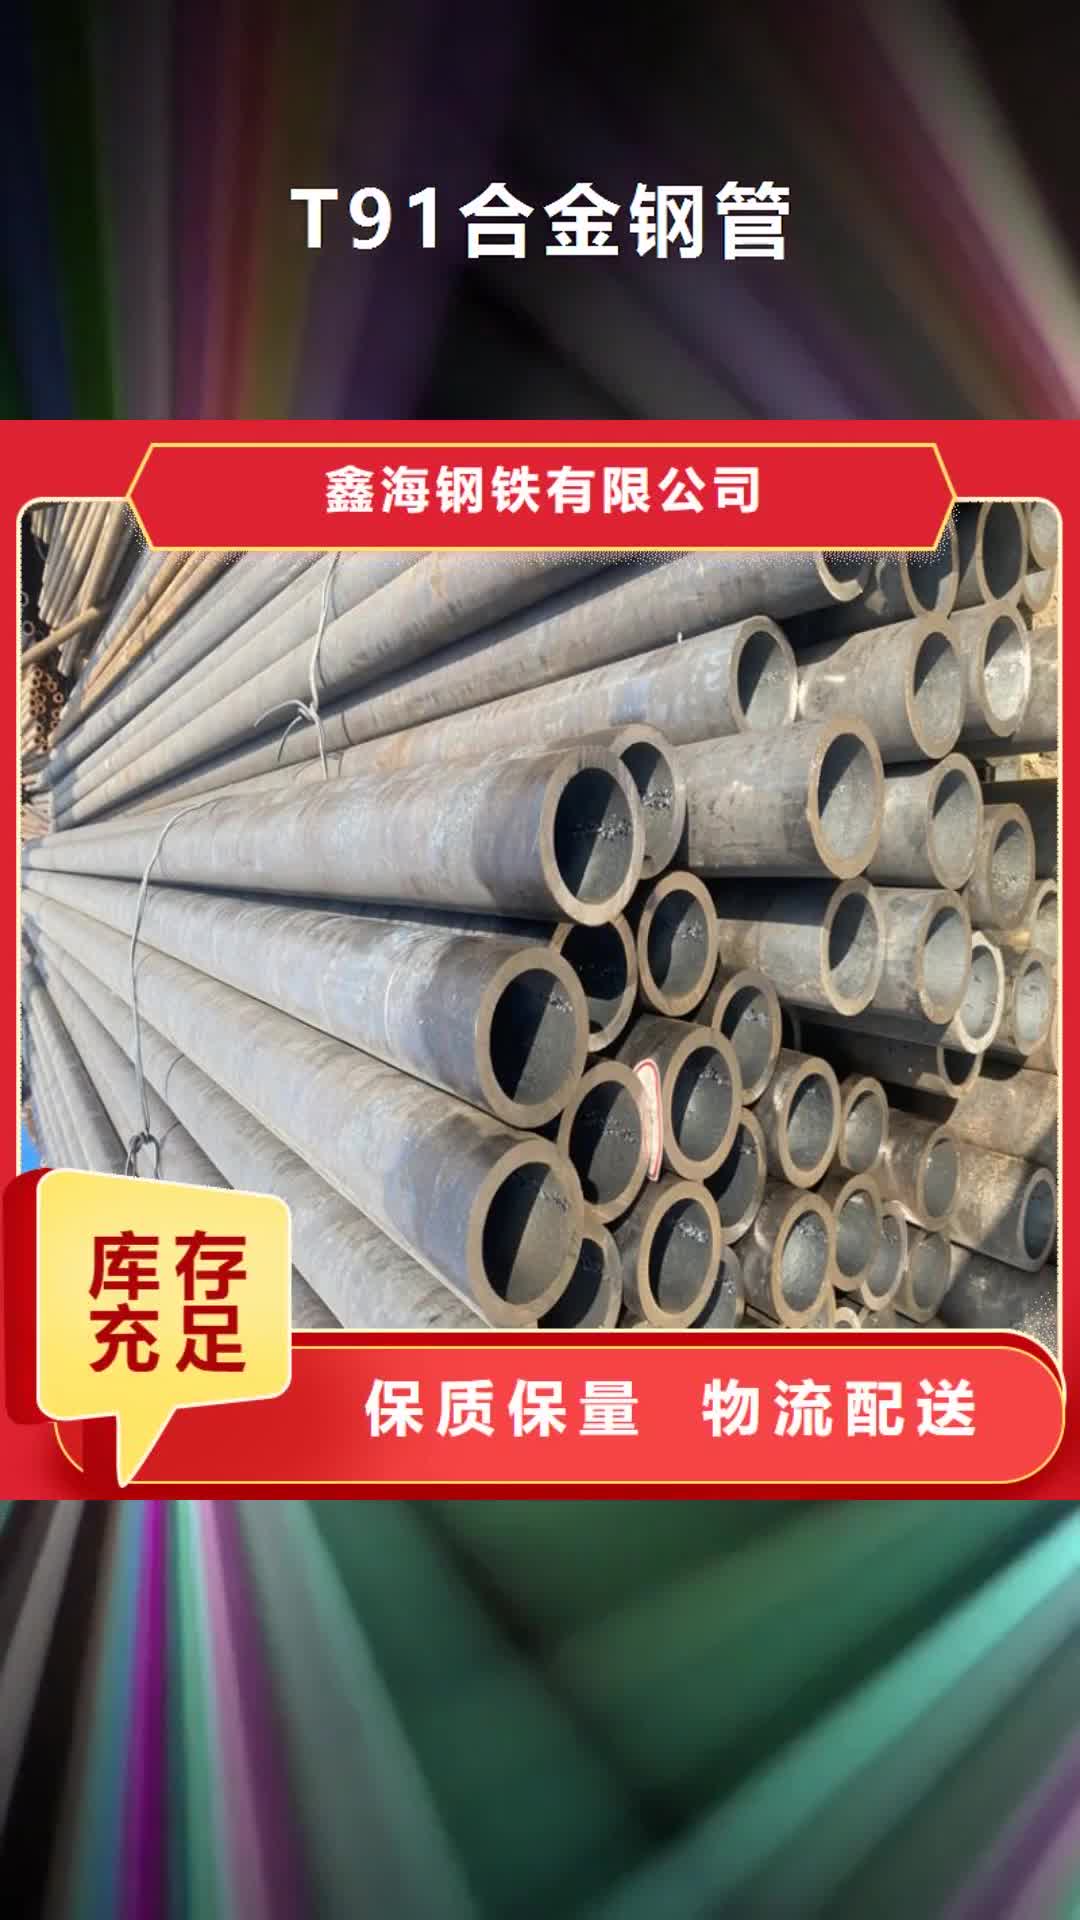 天津【T91合金钢管】,合金钢管主推产品